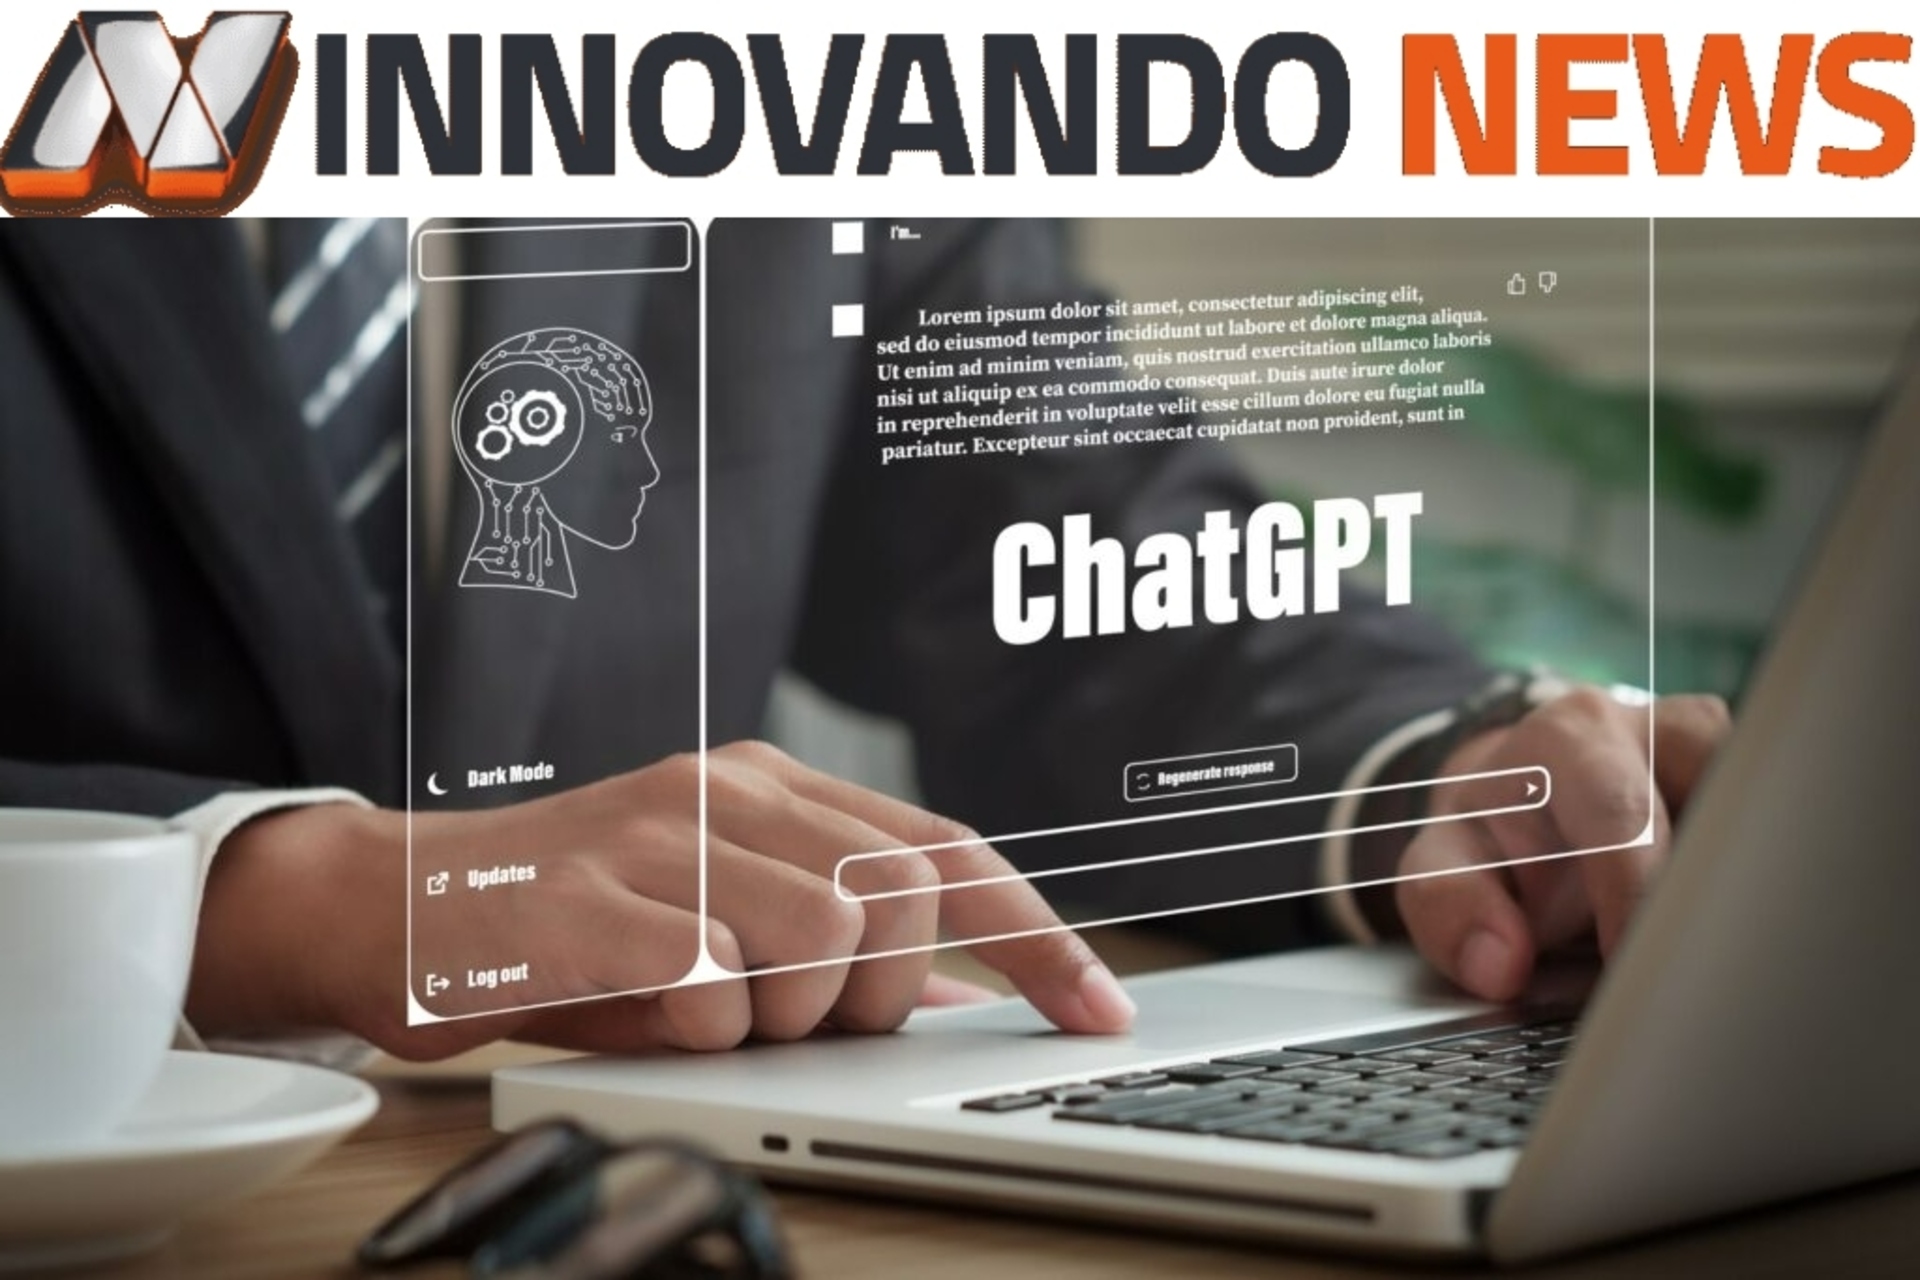 ChatGPT: udělali jsme rozhovor s ChatGPT společnosti OpenAI a požádali jsme ji, aby nám řekla o Innovando.News a vztahu mezi žurnalistikou a komunikací